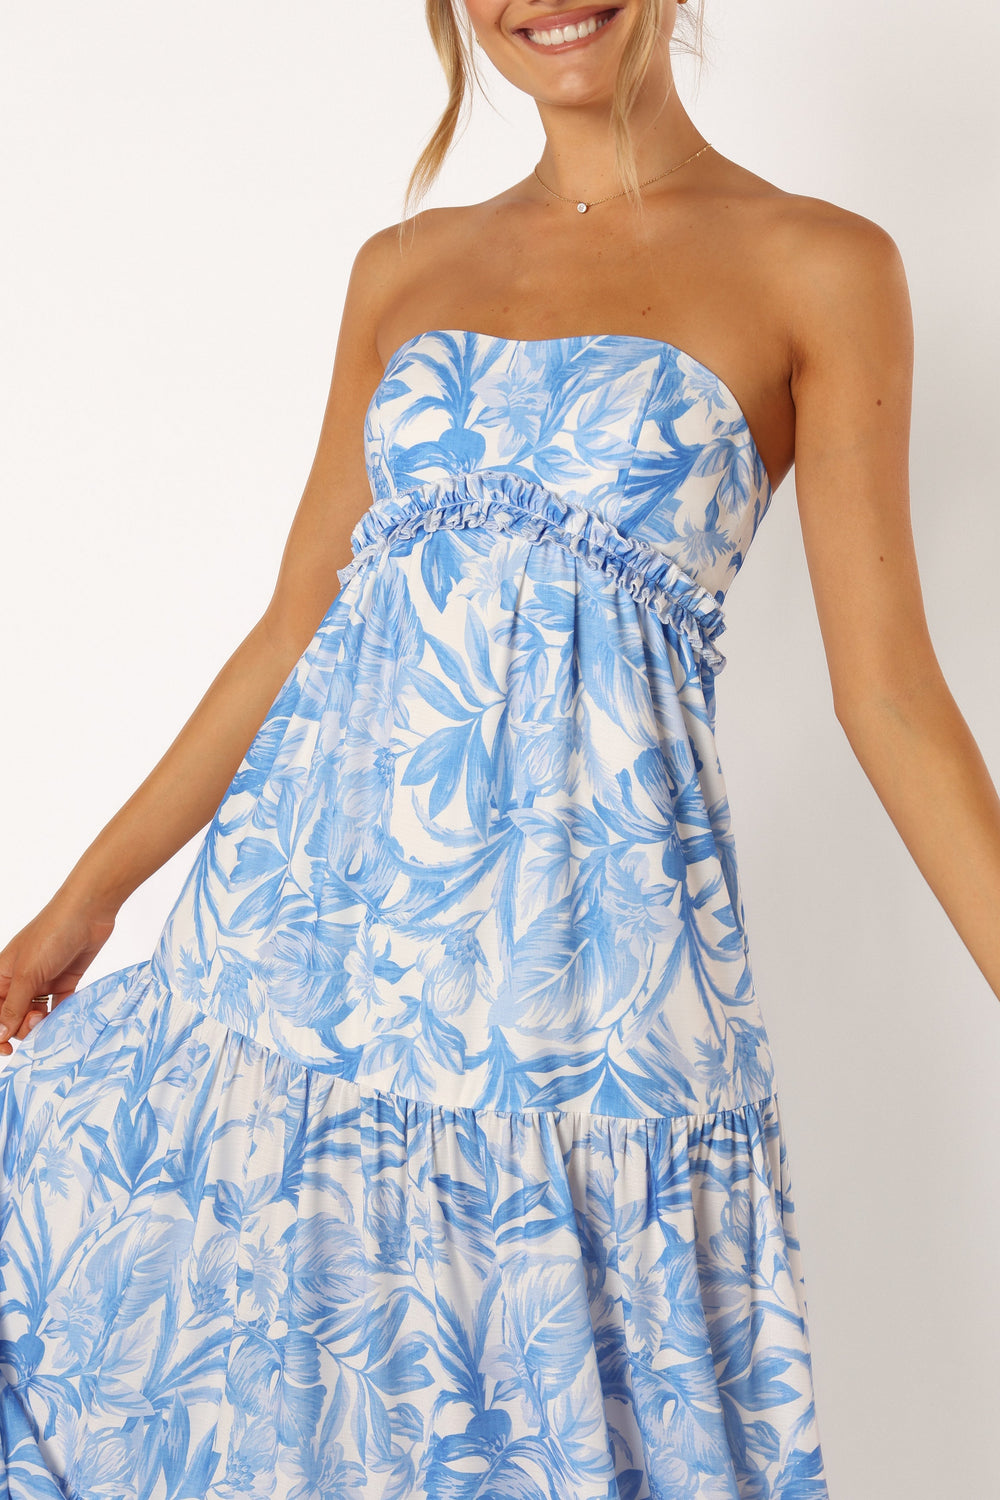 Arianna Strapless Maxi Dress - Blue Floral - Petal & Pup